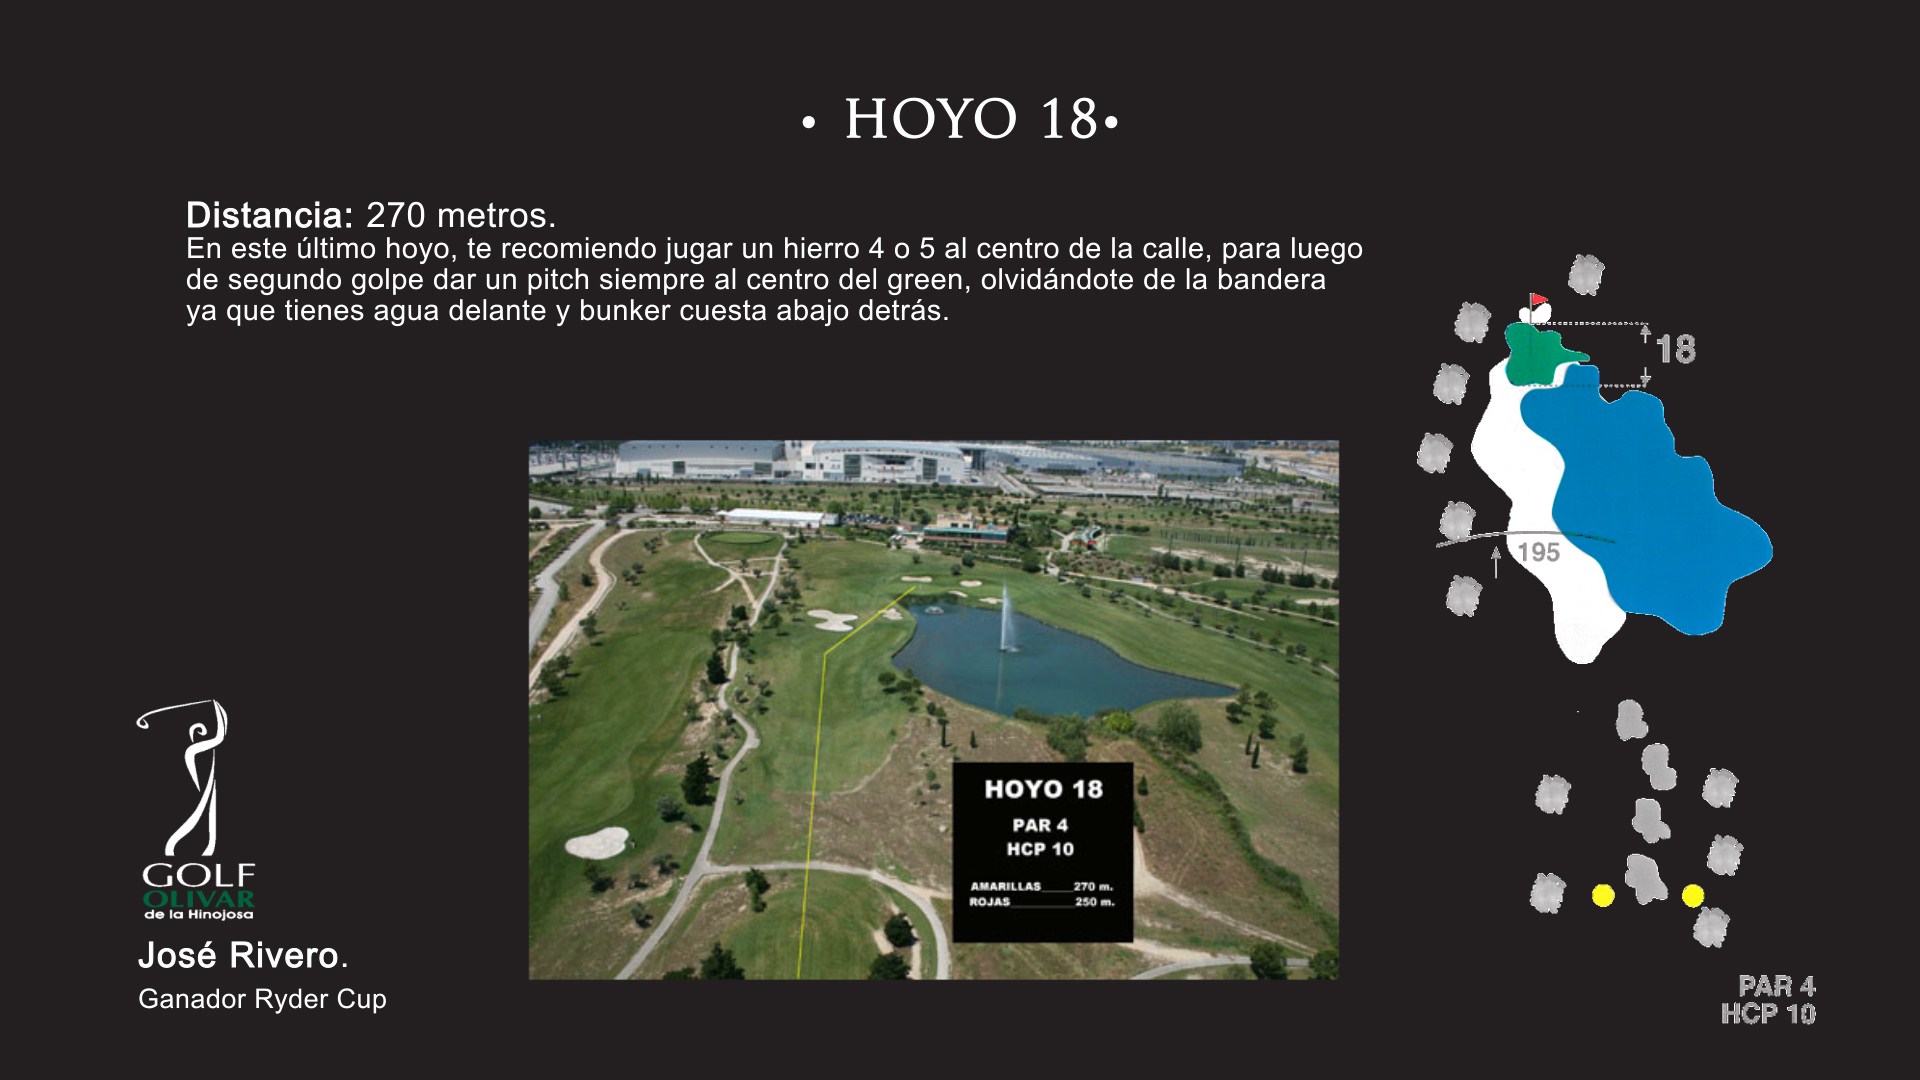 Hoyo 18 Olivar de la Hinojosa